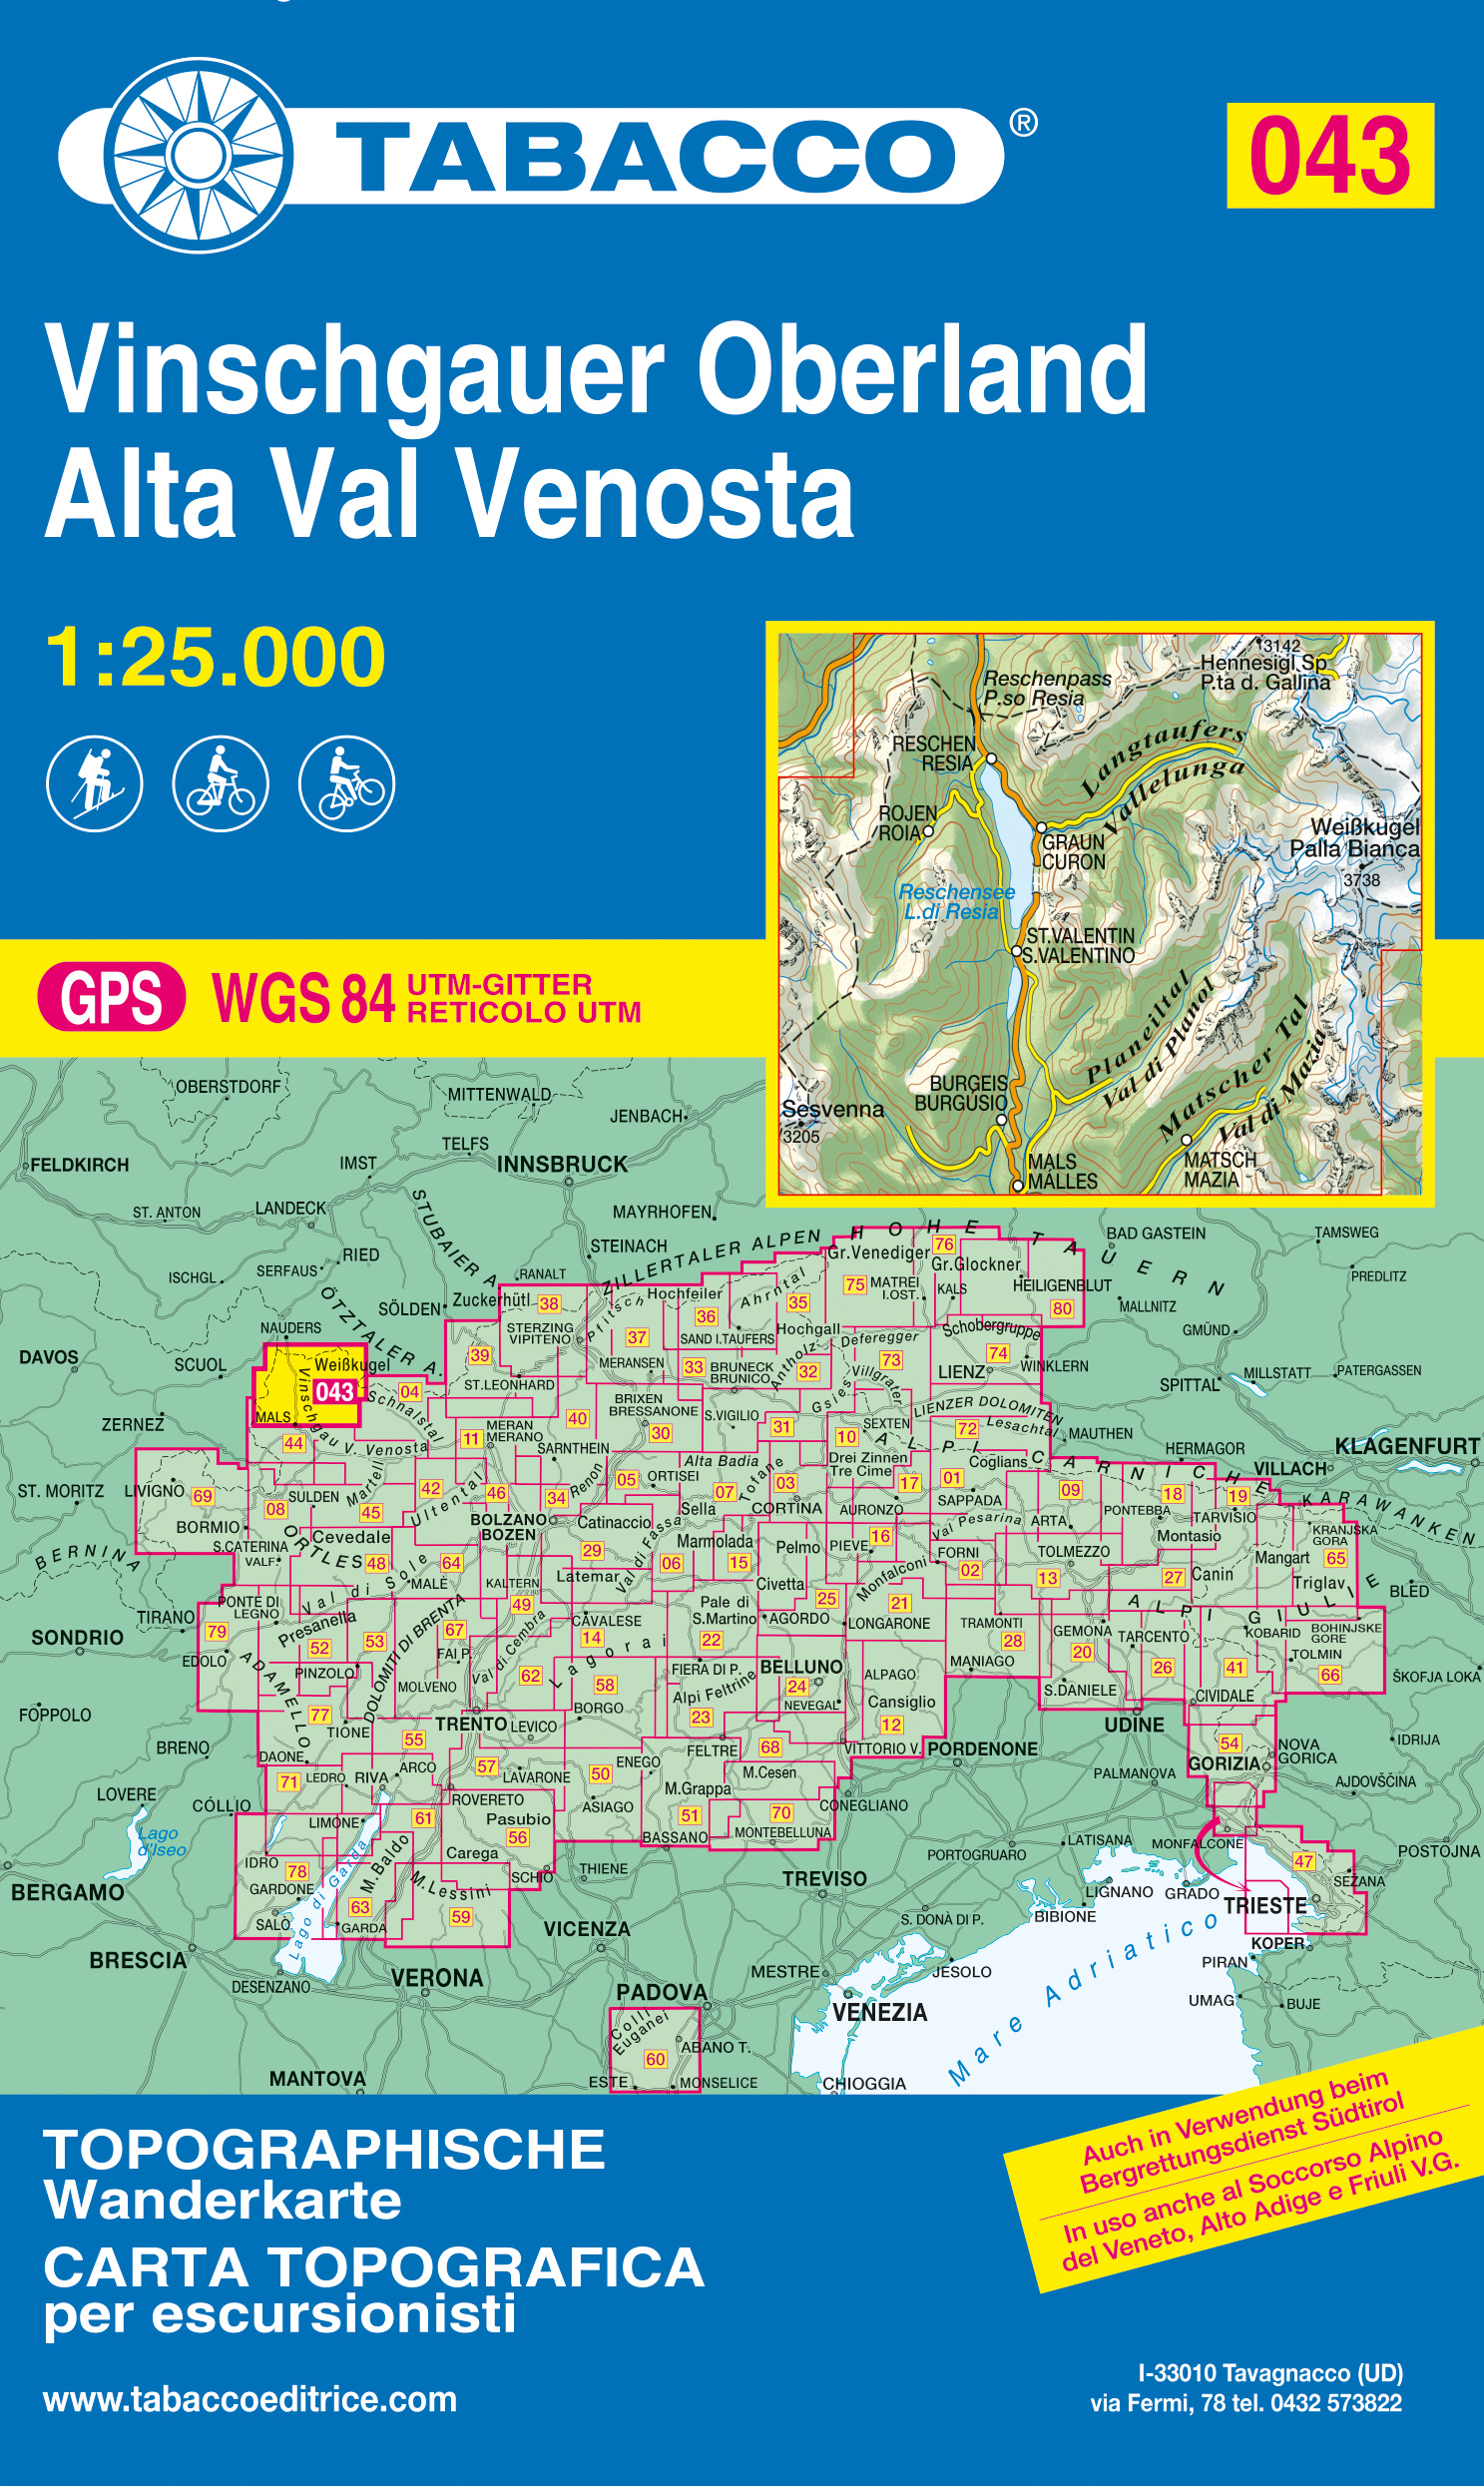 Online bestellen: Wandelkaart 043 Vinschgauer Oberland - Alta Val Venosta | Tabacco Editrice